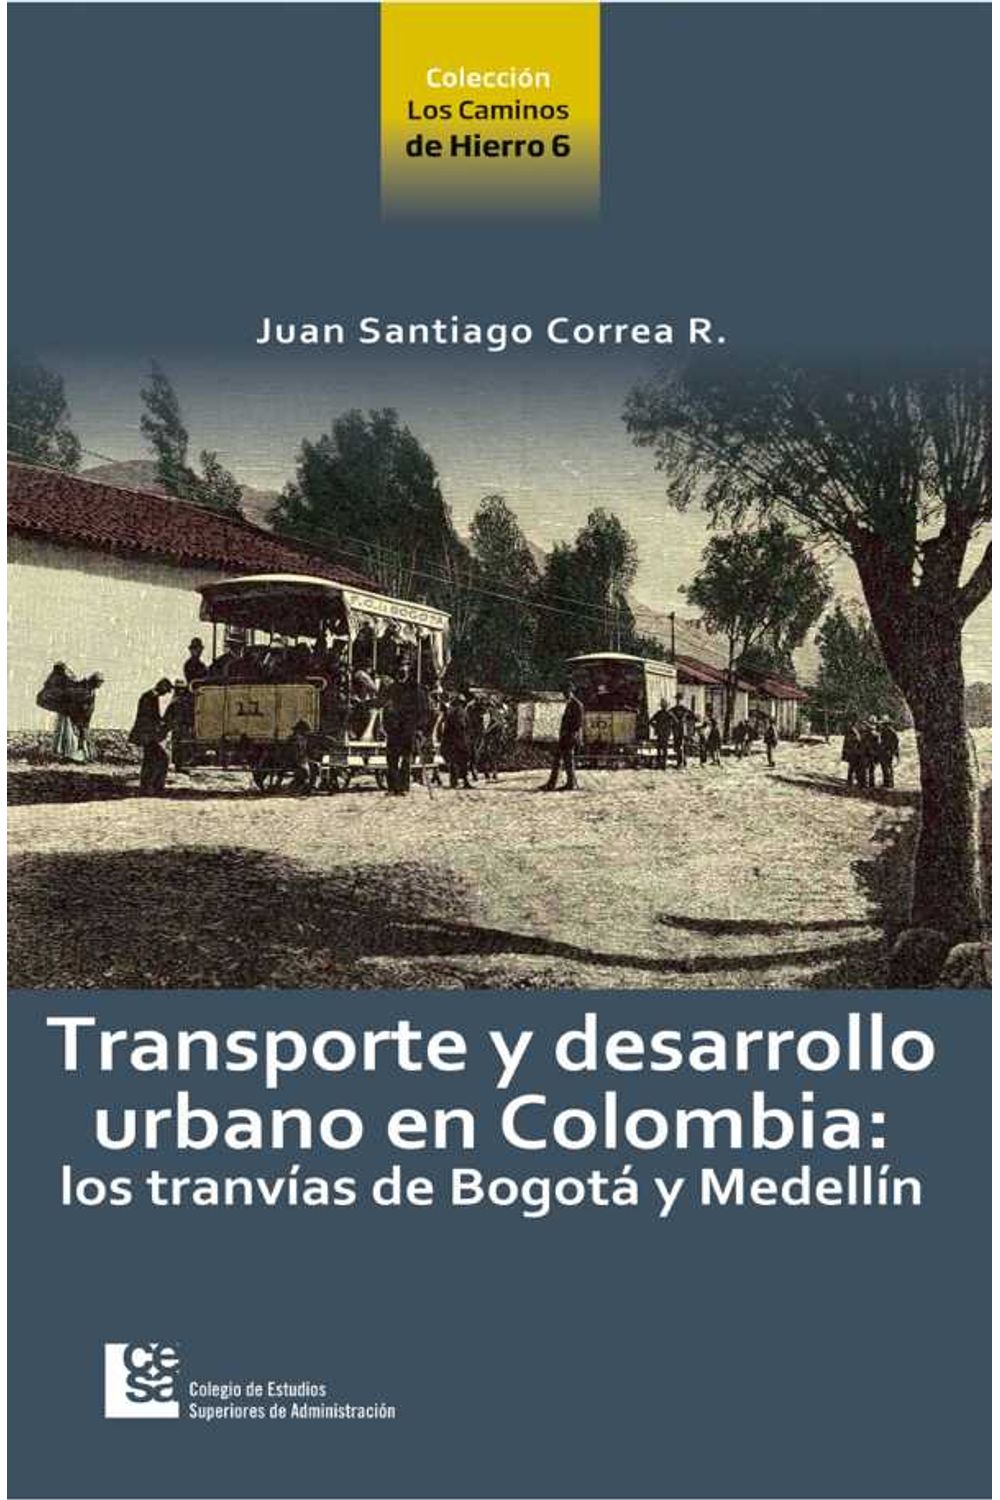 bw-transporte-y-desarrollo-urbano-en-colombia-cesa-9789588988108